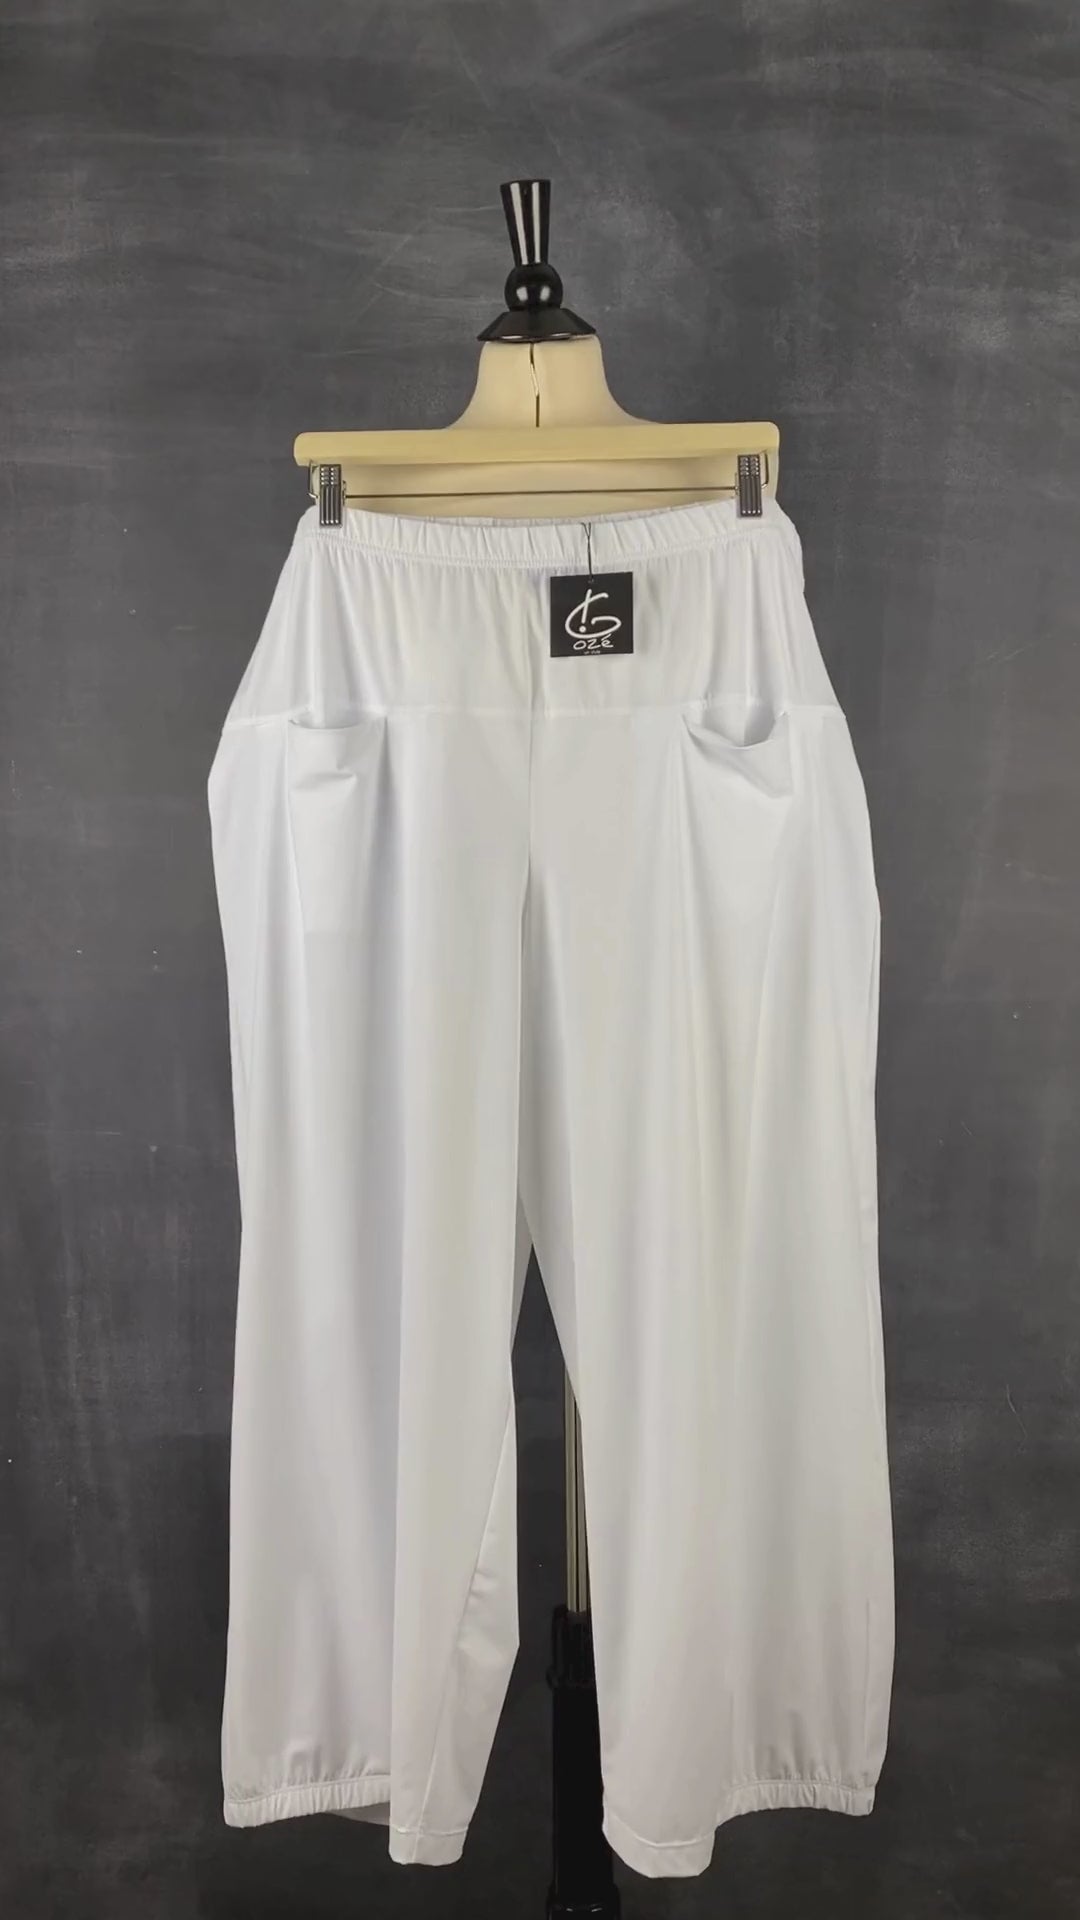 Pantalon blanc à jambe large G!ozé, taille 5xl. Vue de la vidéo qui présente tous les détails du pantalon.